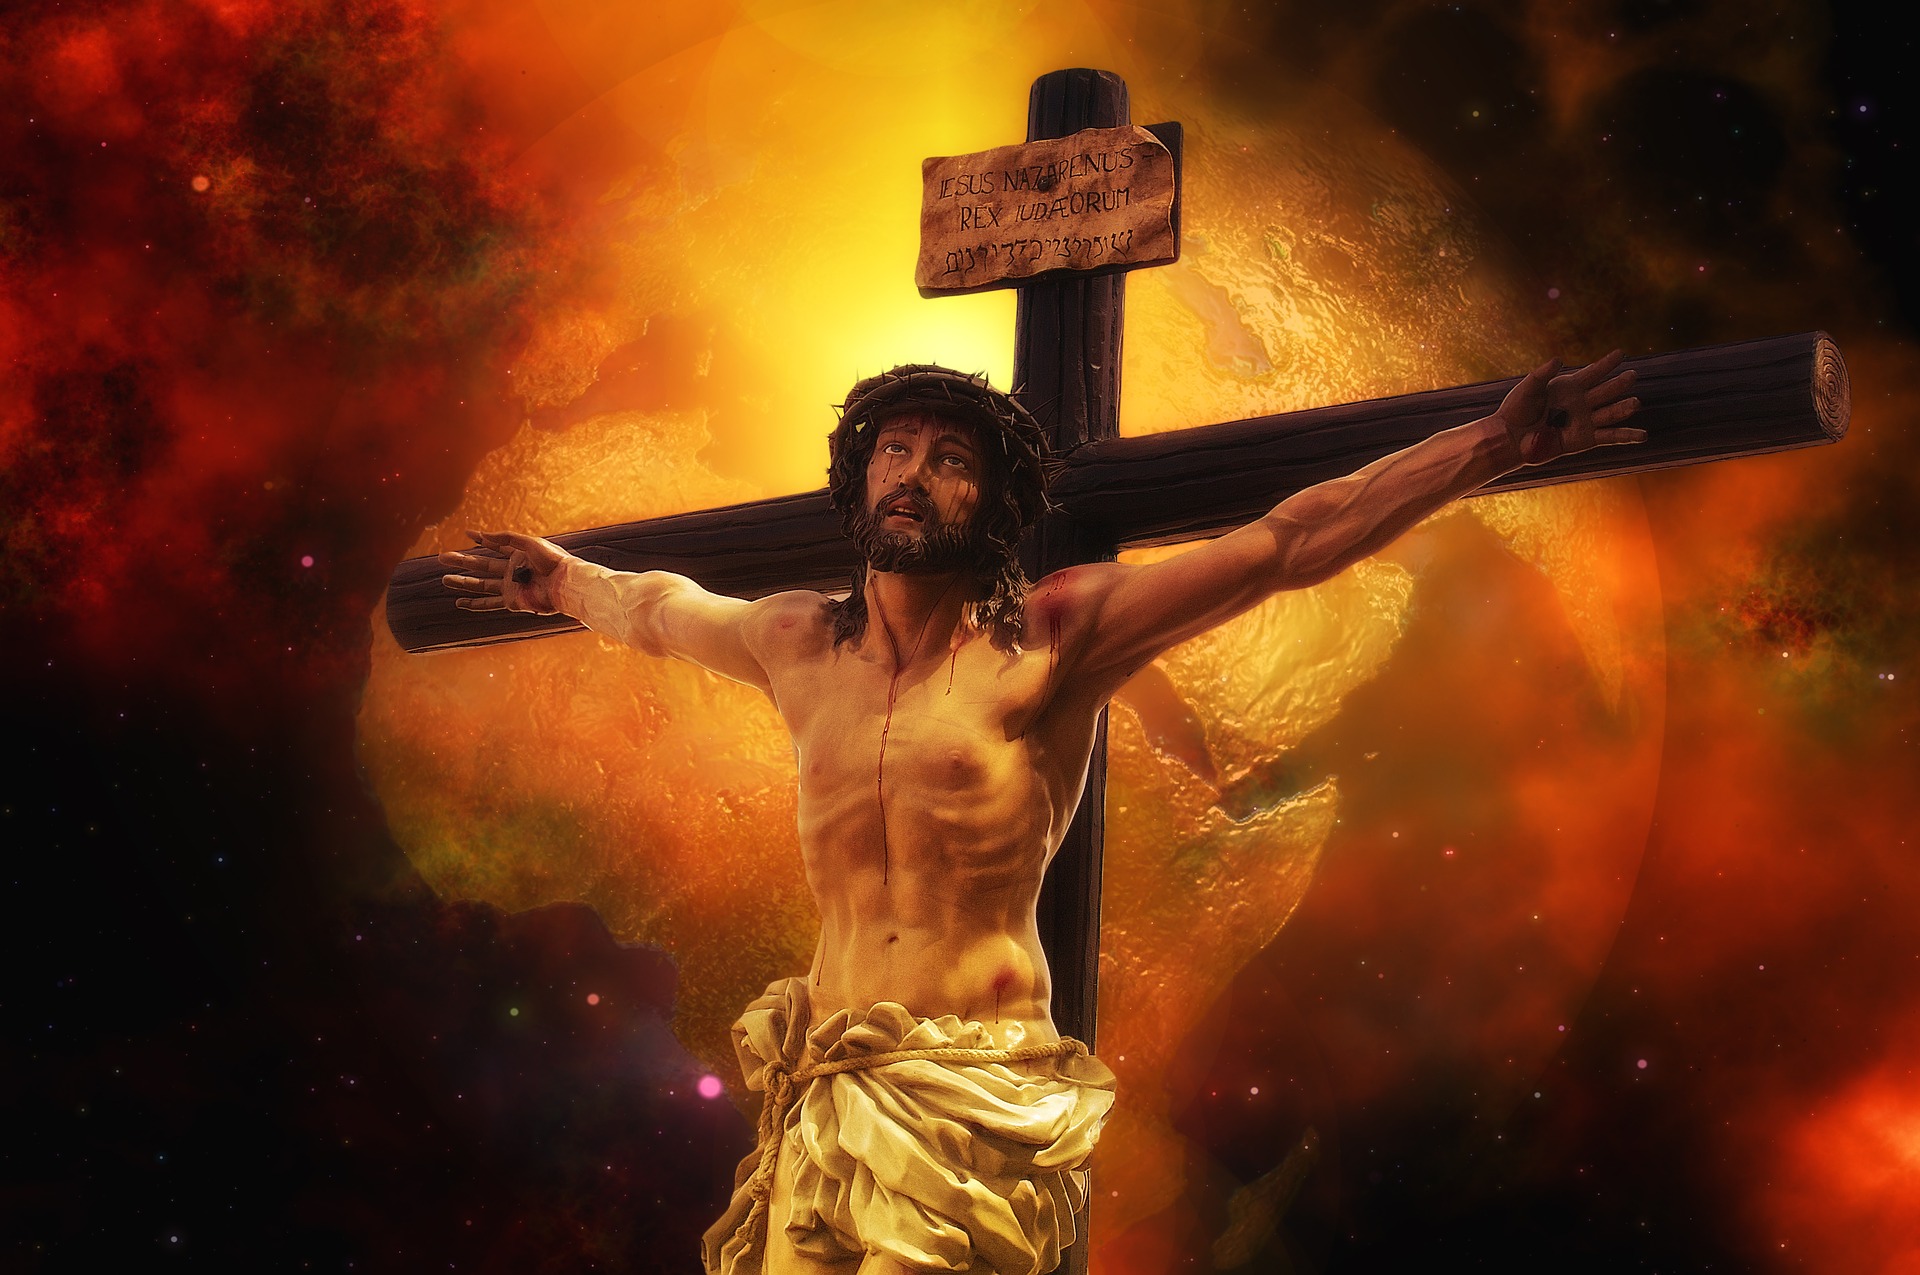 Que significa inri en la cruz de jesus